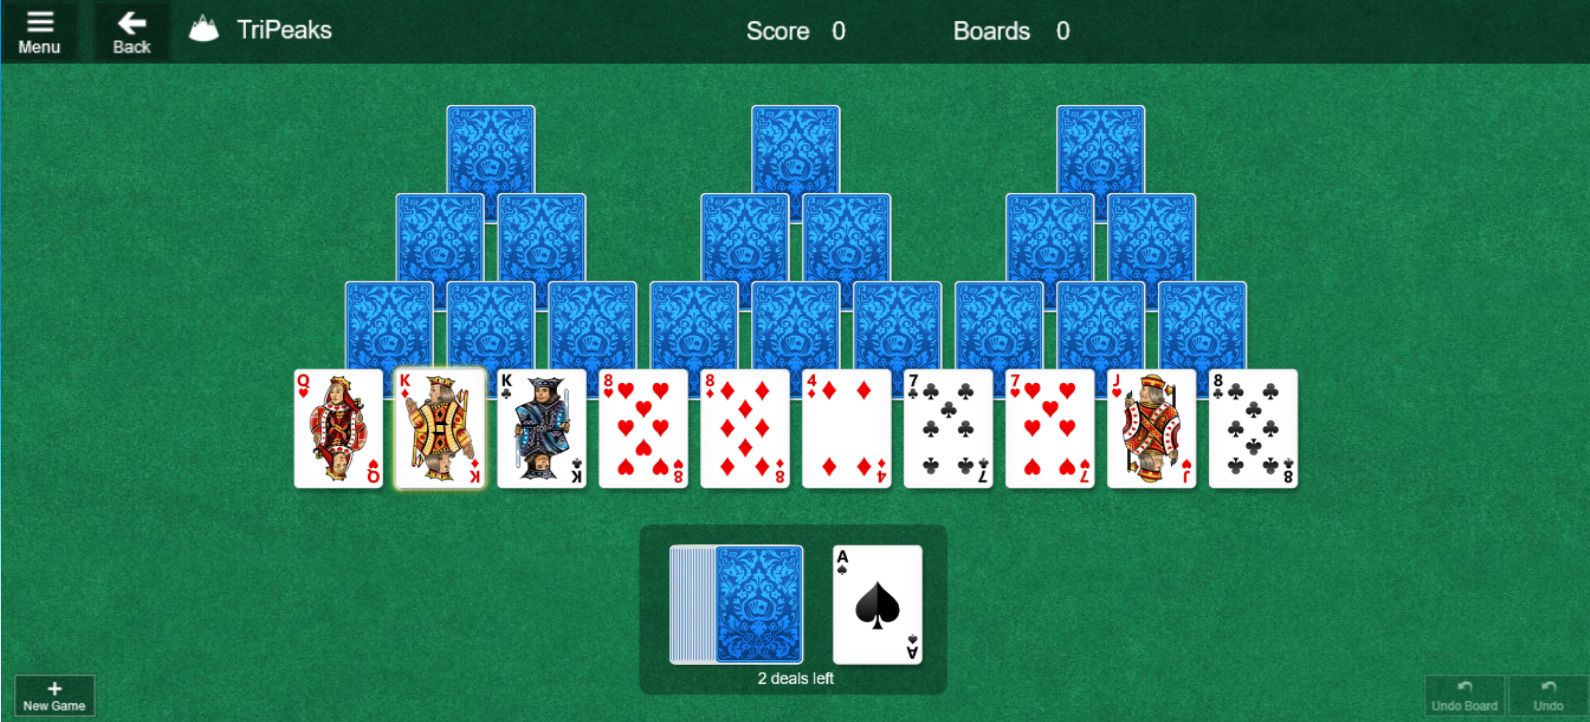 msn games solitaire - 9 fantastici giochi online di Bing a cui puoi giocare gratuitamente